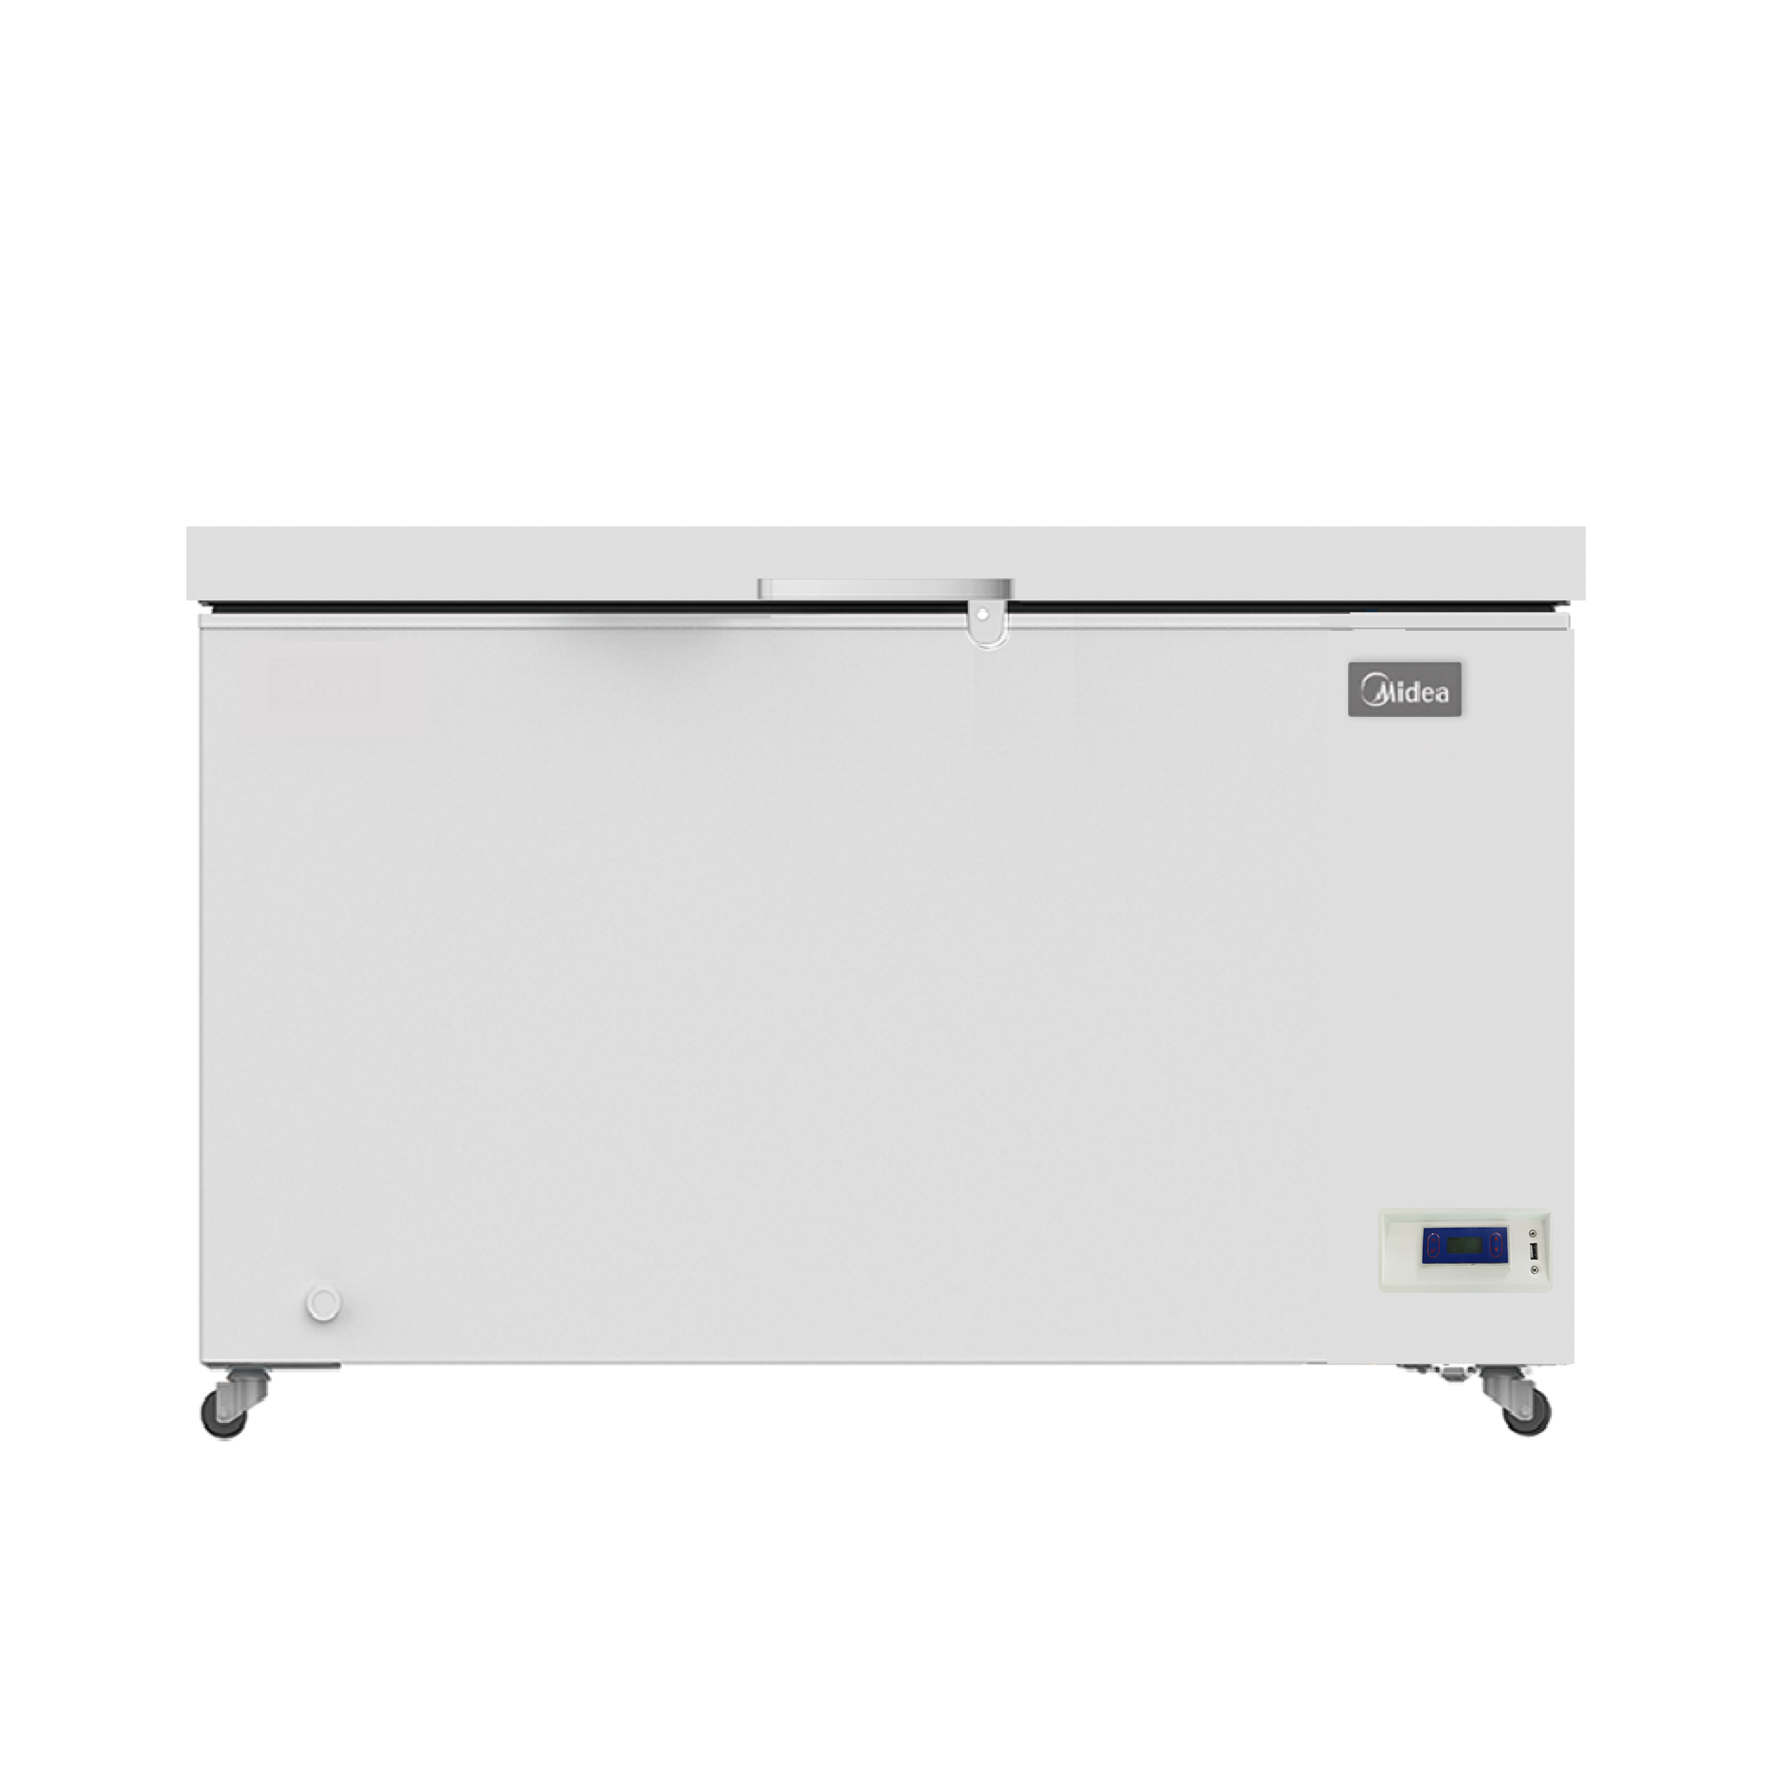 Ice-lined Refrigerator